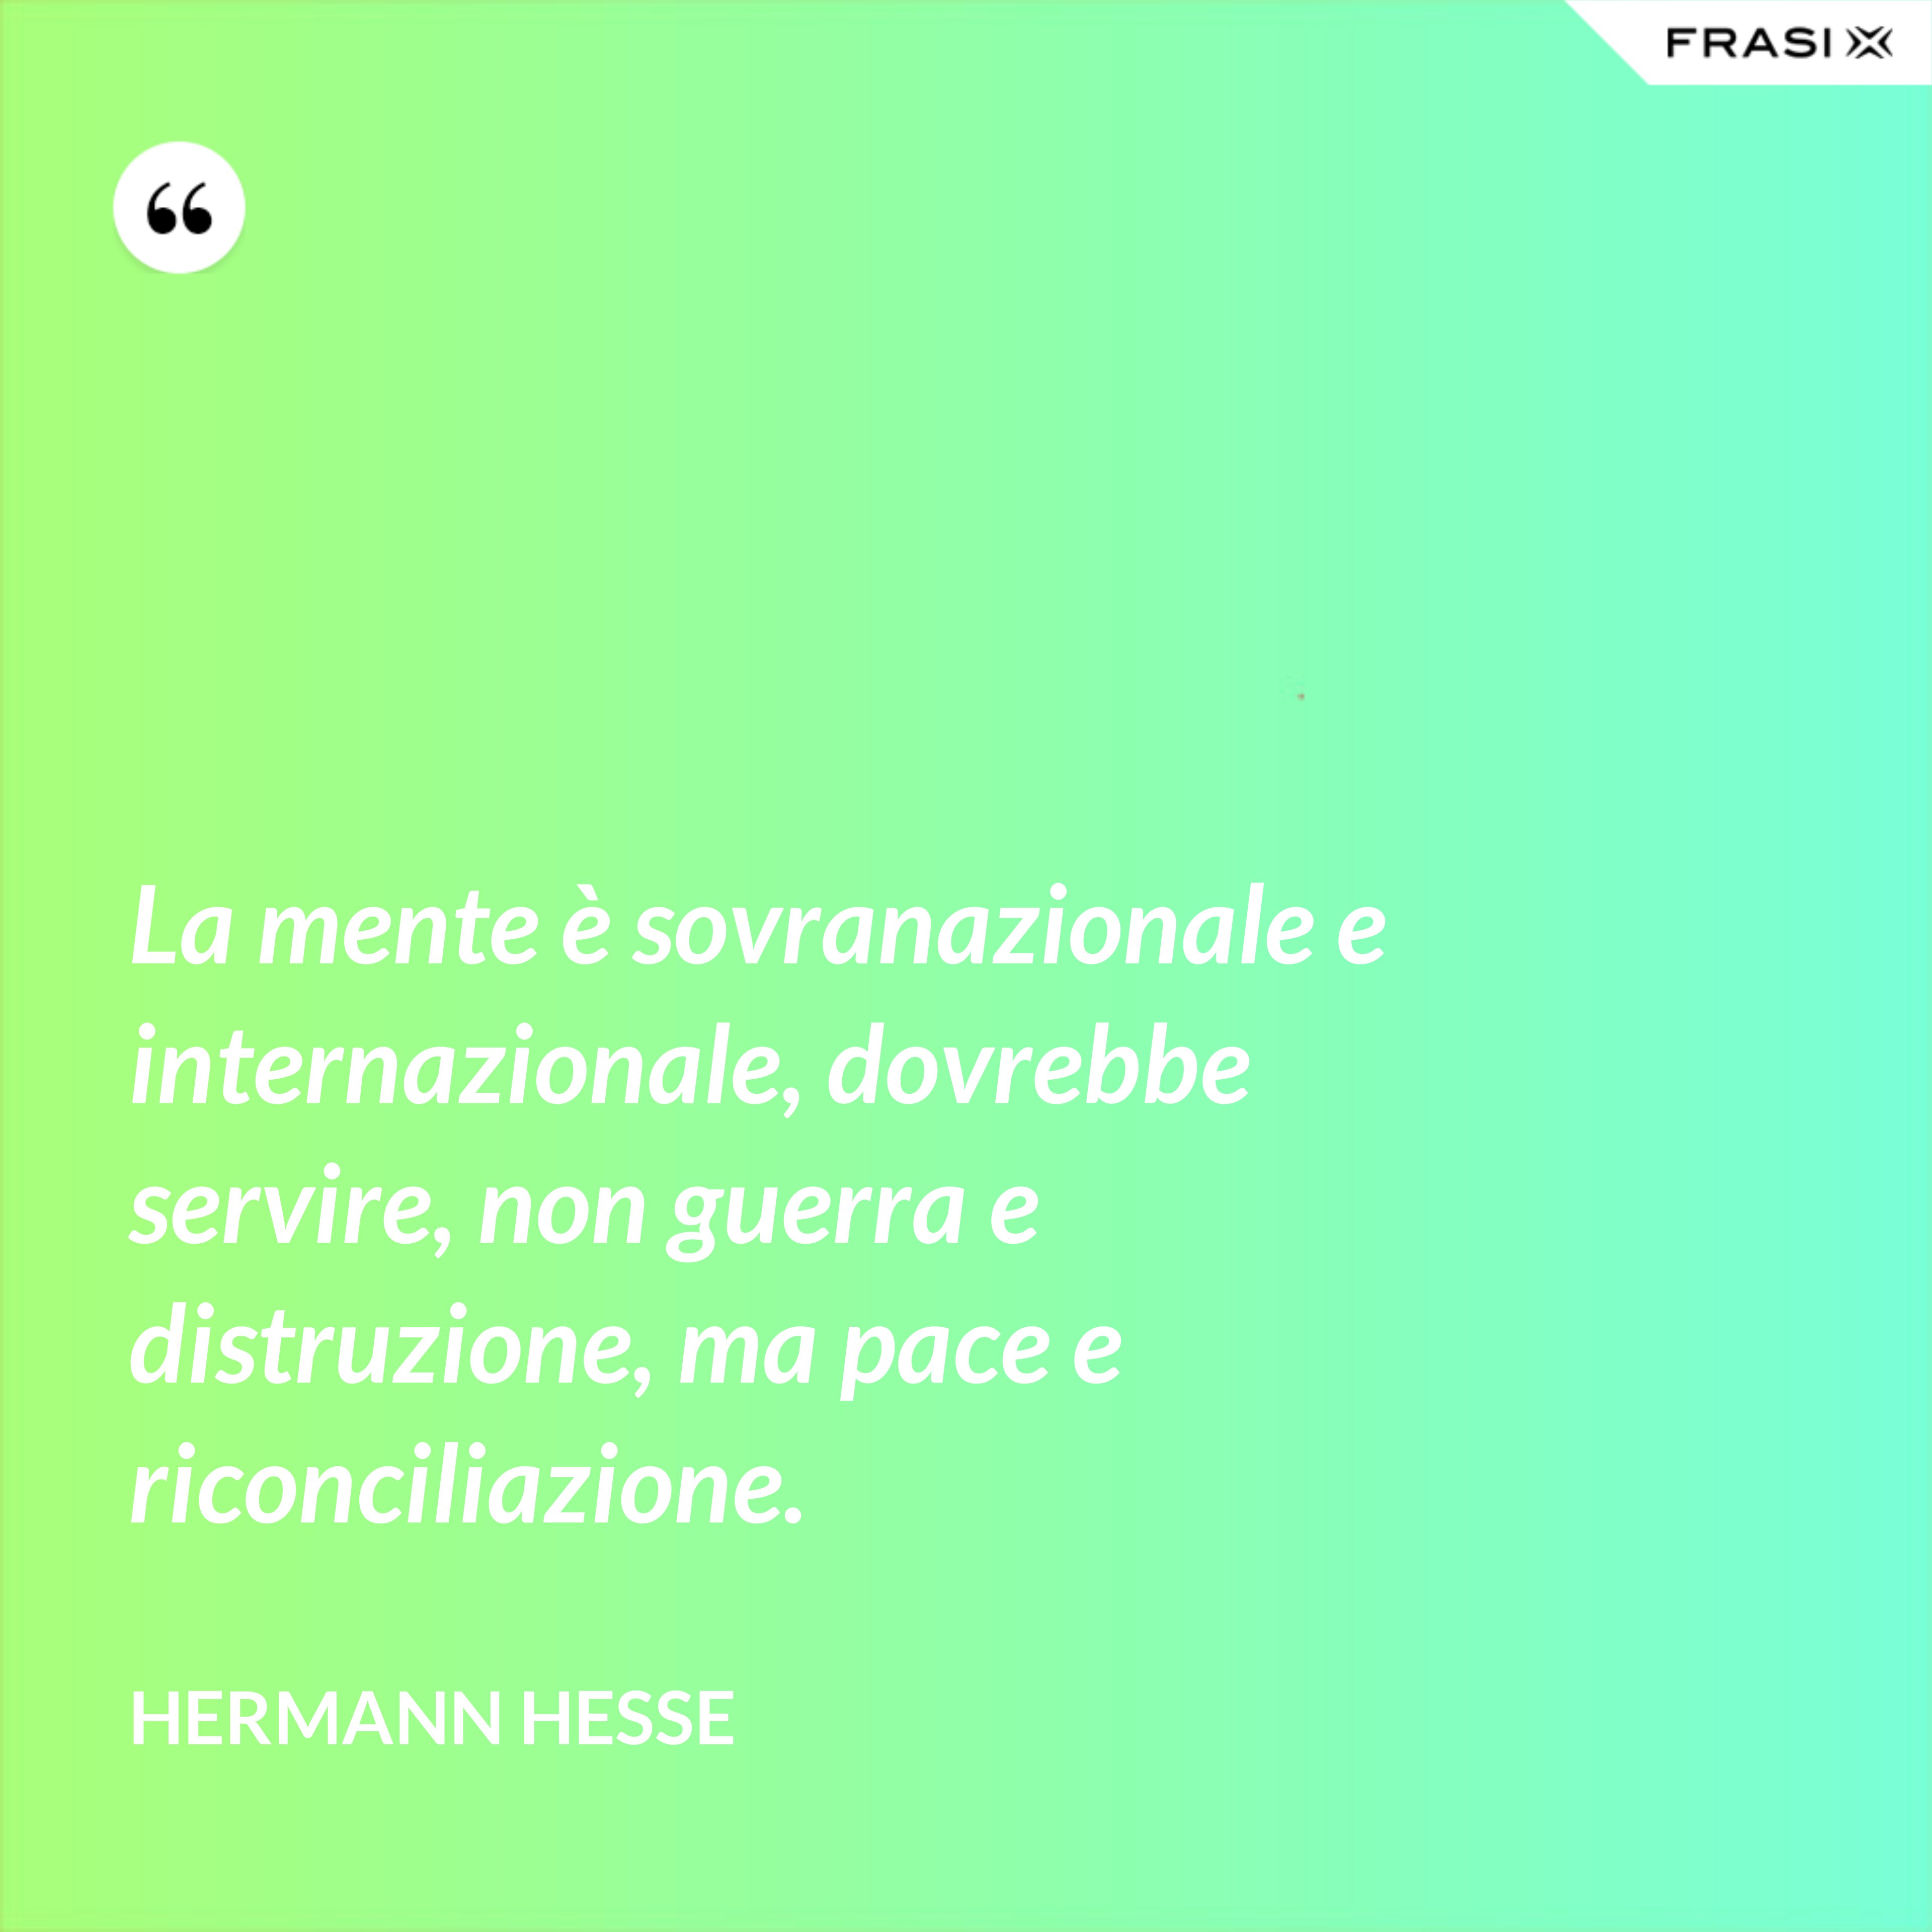 La mente è sovranazionale e internazionale, dovrebbe servire, non guerra e distruzione, ma pace e riconciliazione. - Hermann Hesse